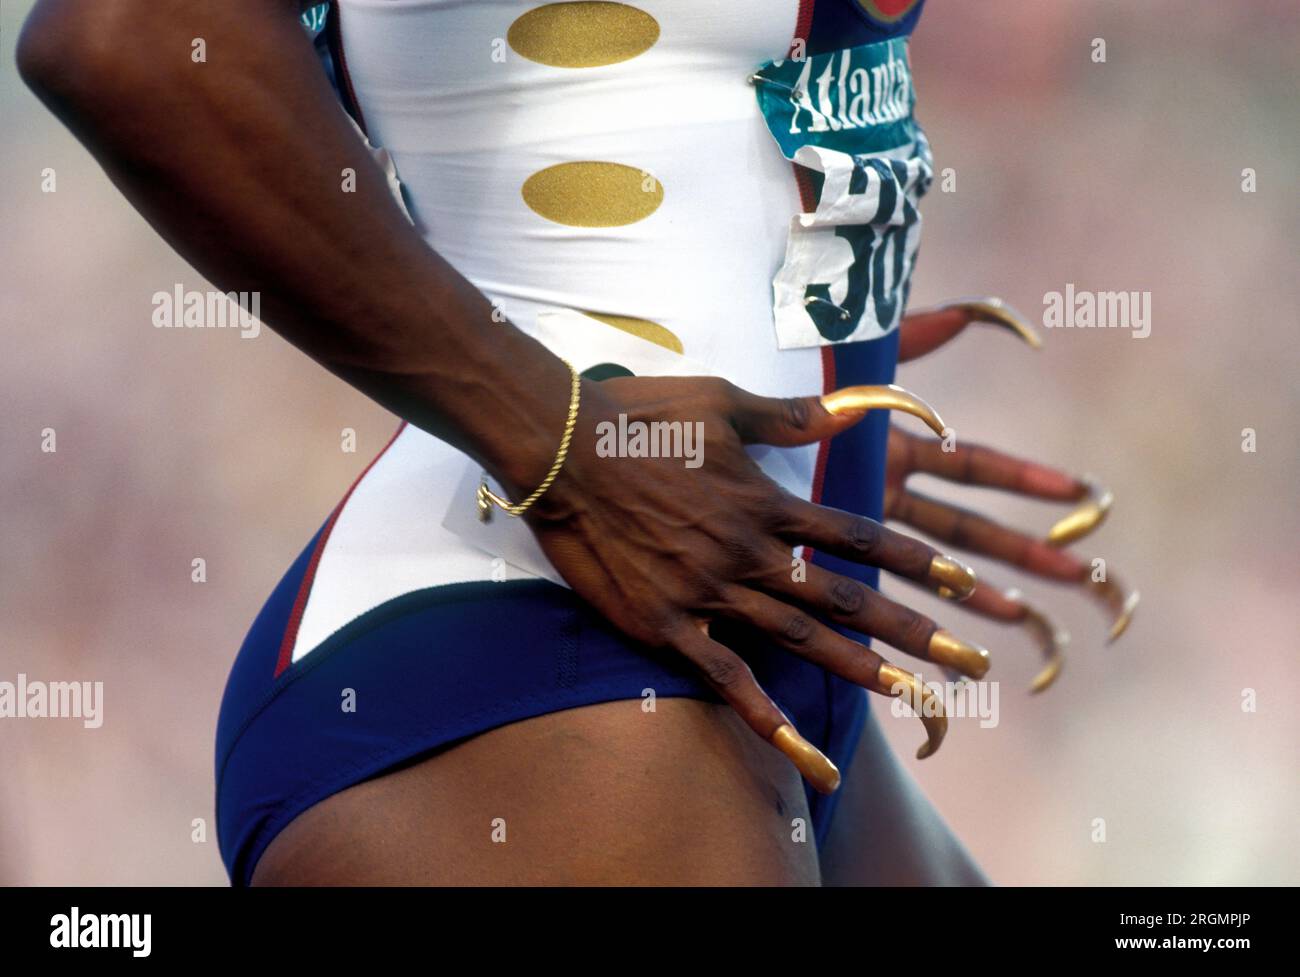 Atlanta, USA, 27.07.1996 Bei den olympischen Sommerspielen in Atlanta gewann Gail DEVERS (USA) die Goldmedaille über die 100 m der Frauen Foto: Norbert Schmidt, Düsseldorf Stock Photo